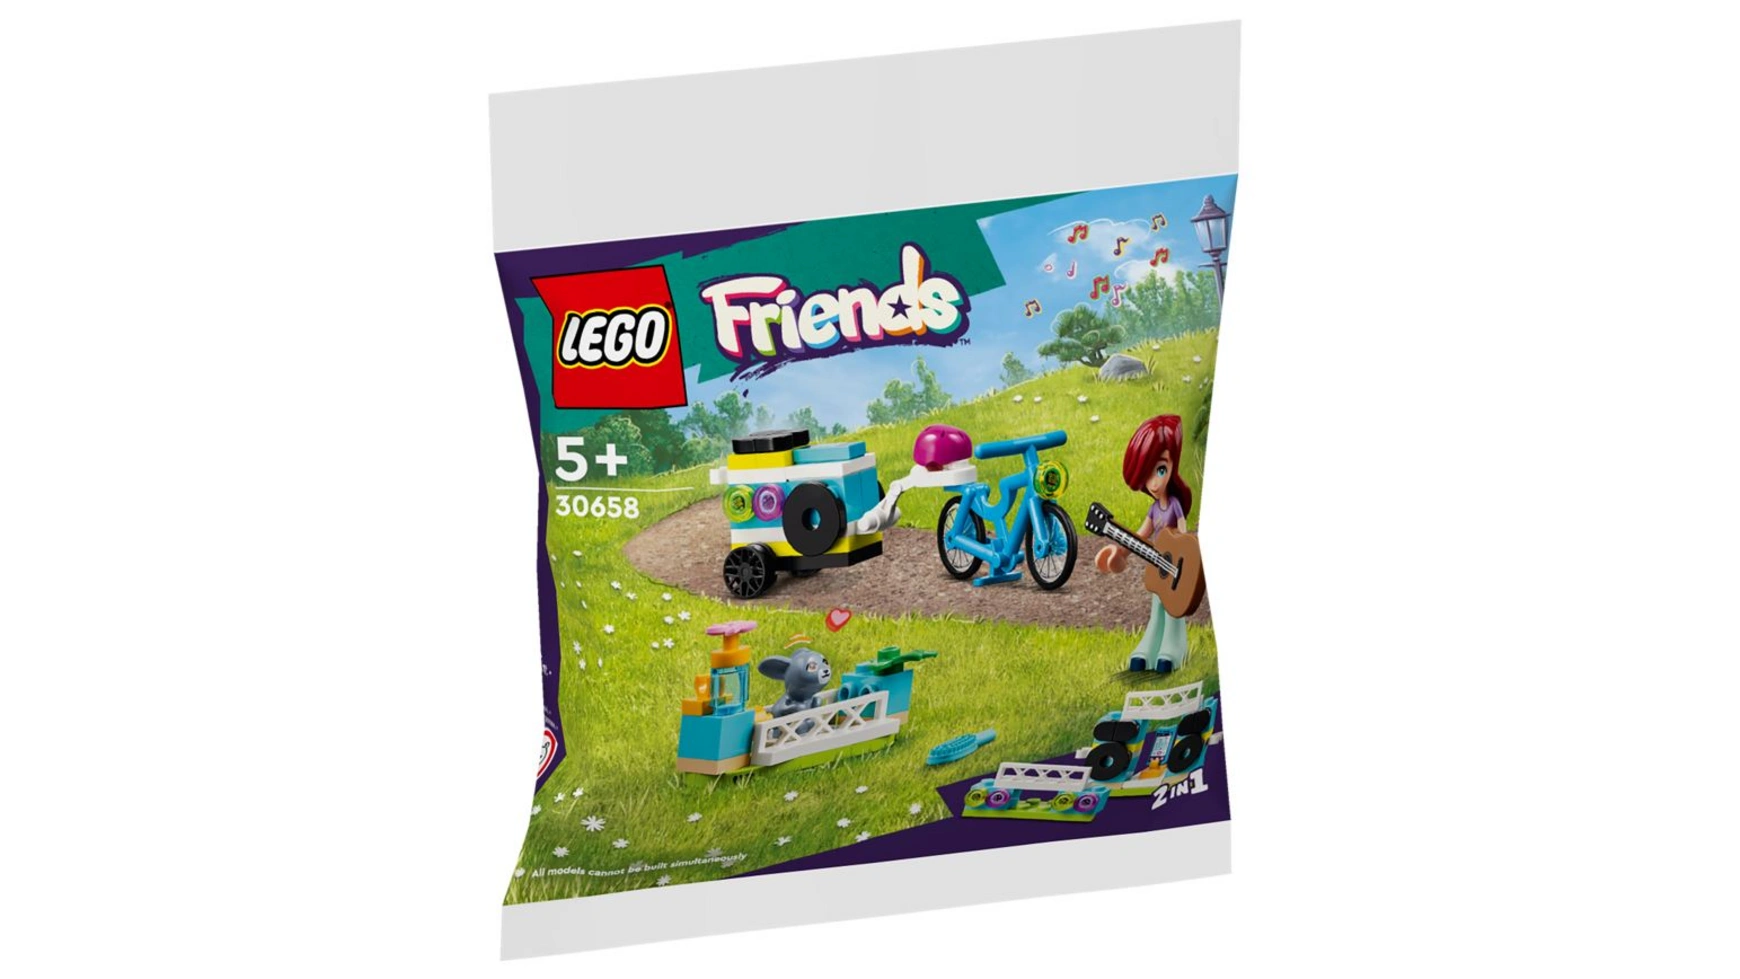 Музыкальный трейлер Lego Friends 30658